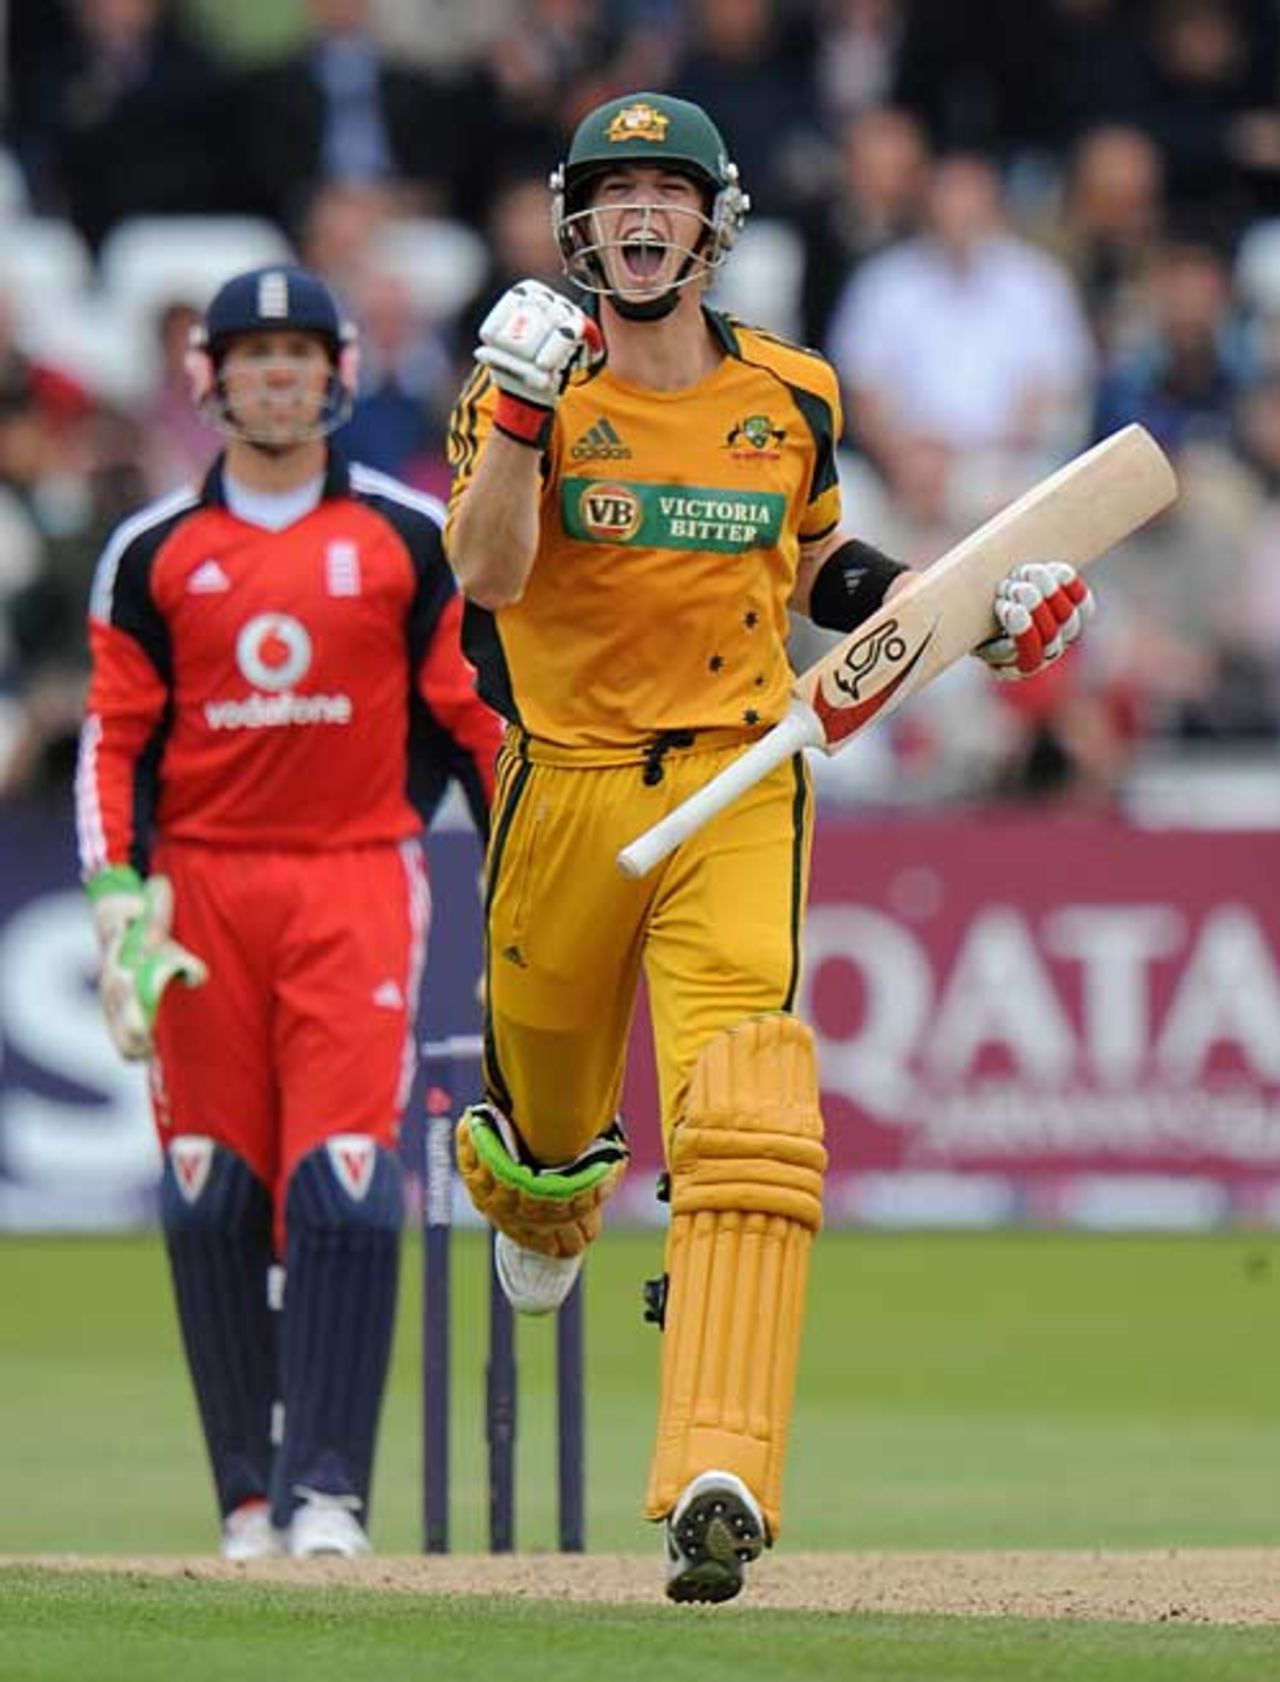 Tim Paine runs through to complete his maiden hundred, England v Australia, 6th ODI, Trent Bridge, September 17, 2009